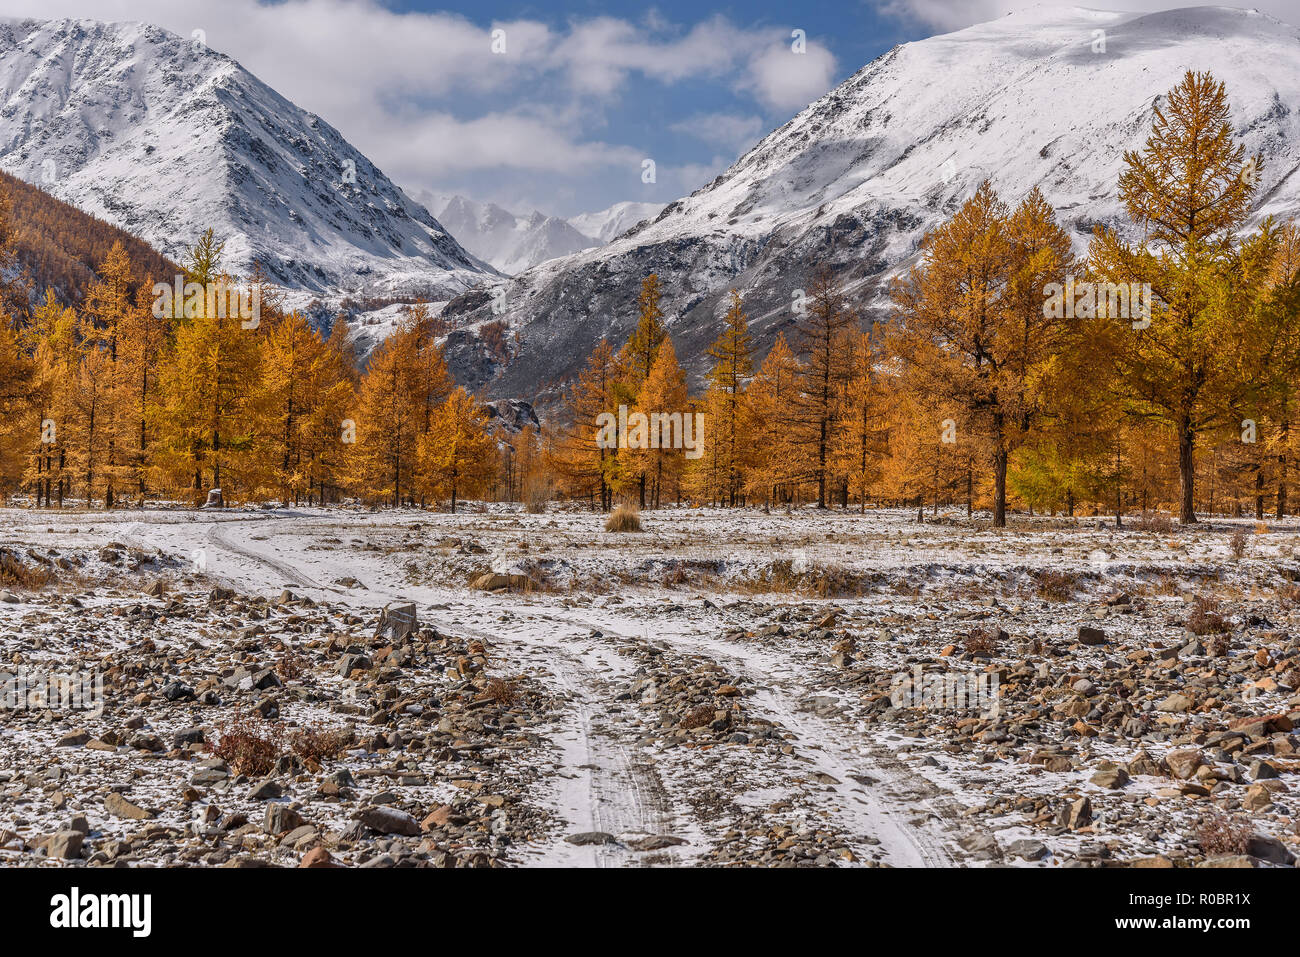 Erstaunlich Herbst Landschaft mit goldenen Lärchen, steiniger Weg und der erste Schnee in den Bergen gegen den blauen Himmel mit Wolken Stockfoto